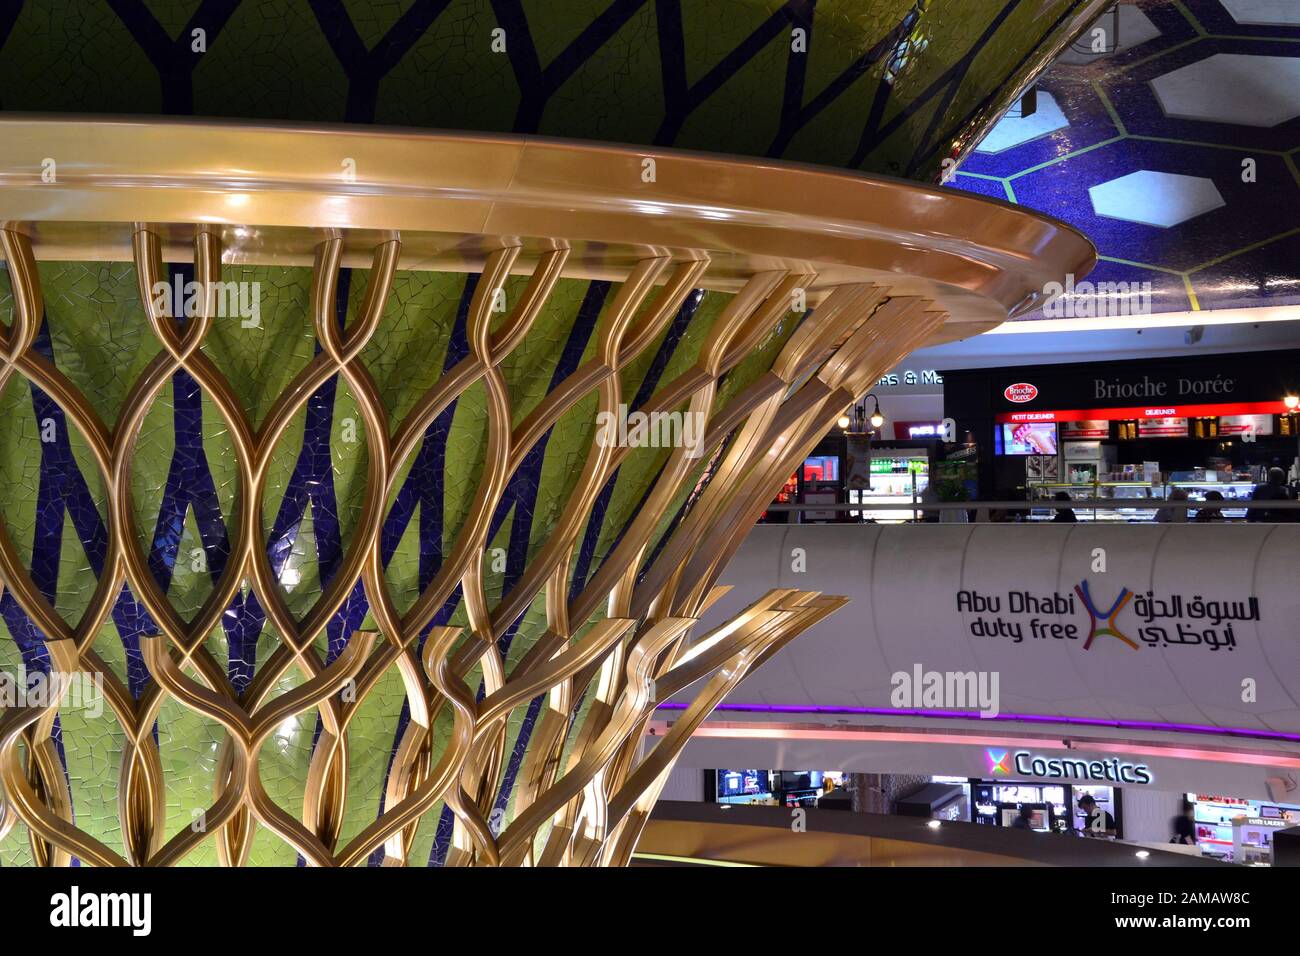 L'area centrale del Terminal 1 all'Aeroporto di Abu Dhabi, Abu Dhabi, Emirati Arabi Uniti, include un cartello che indica i suoi negozi duty free Foto Stock